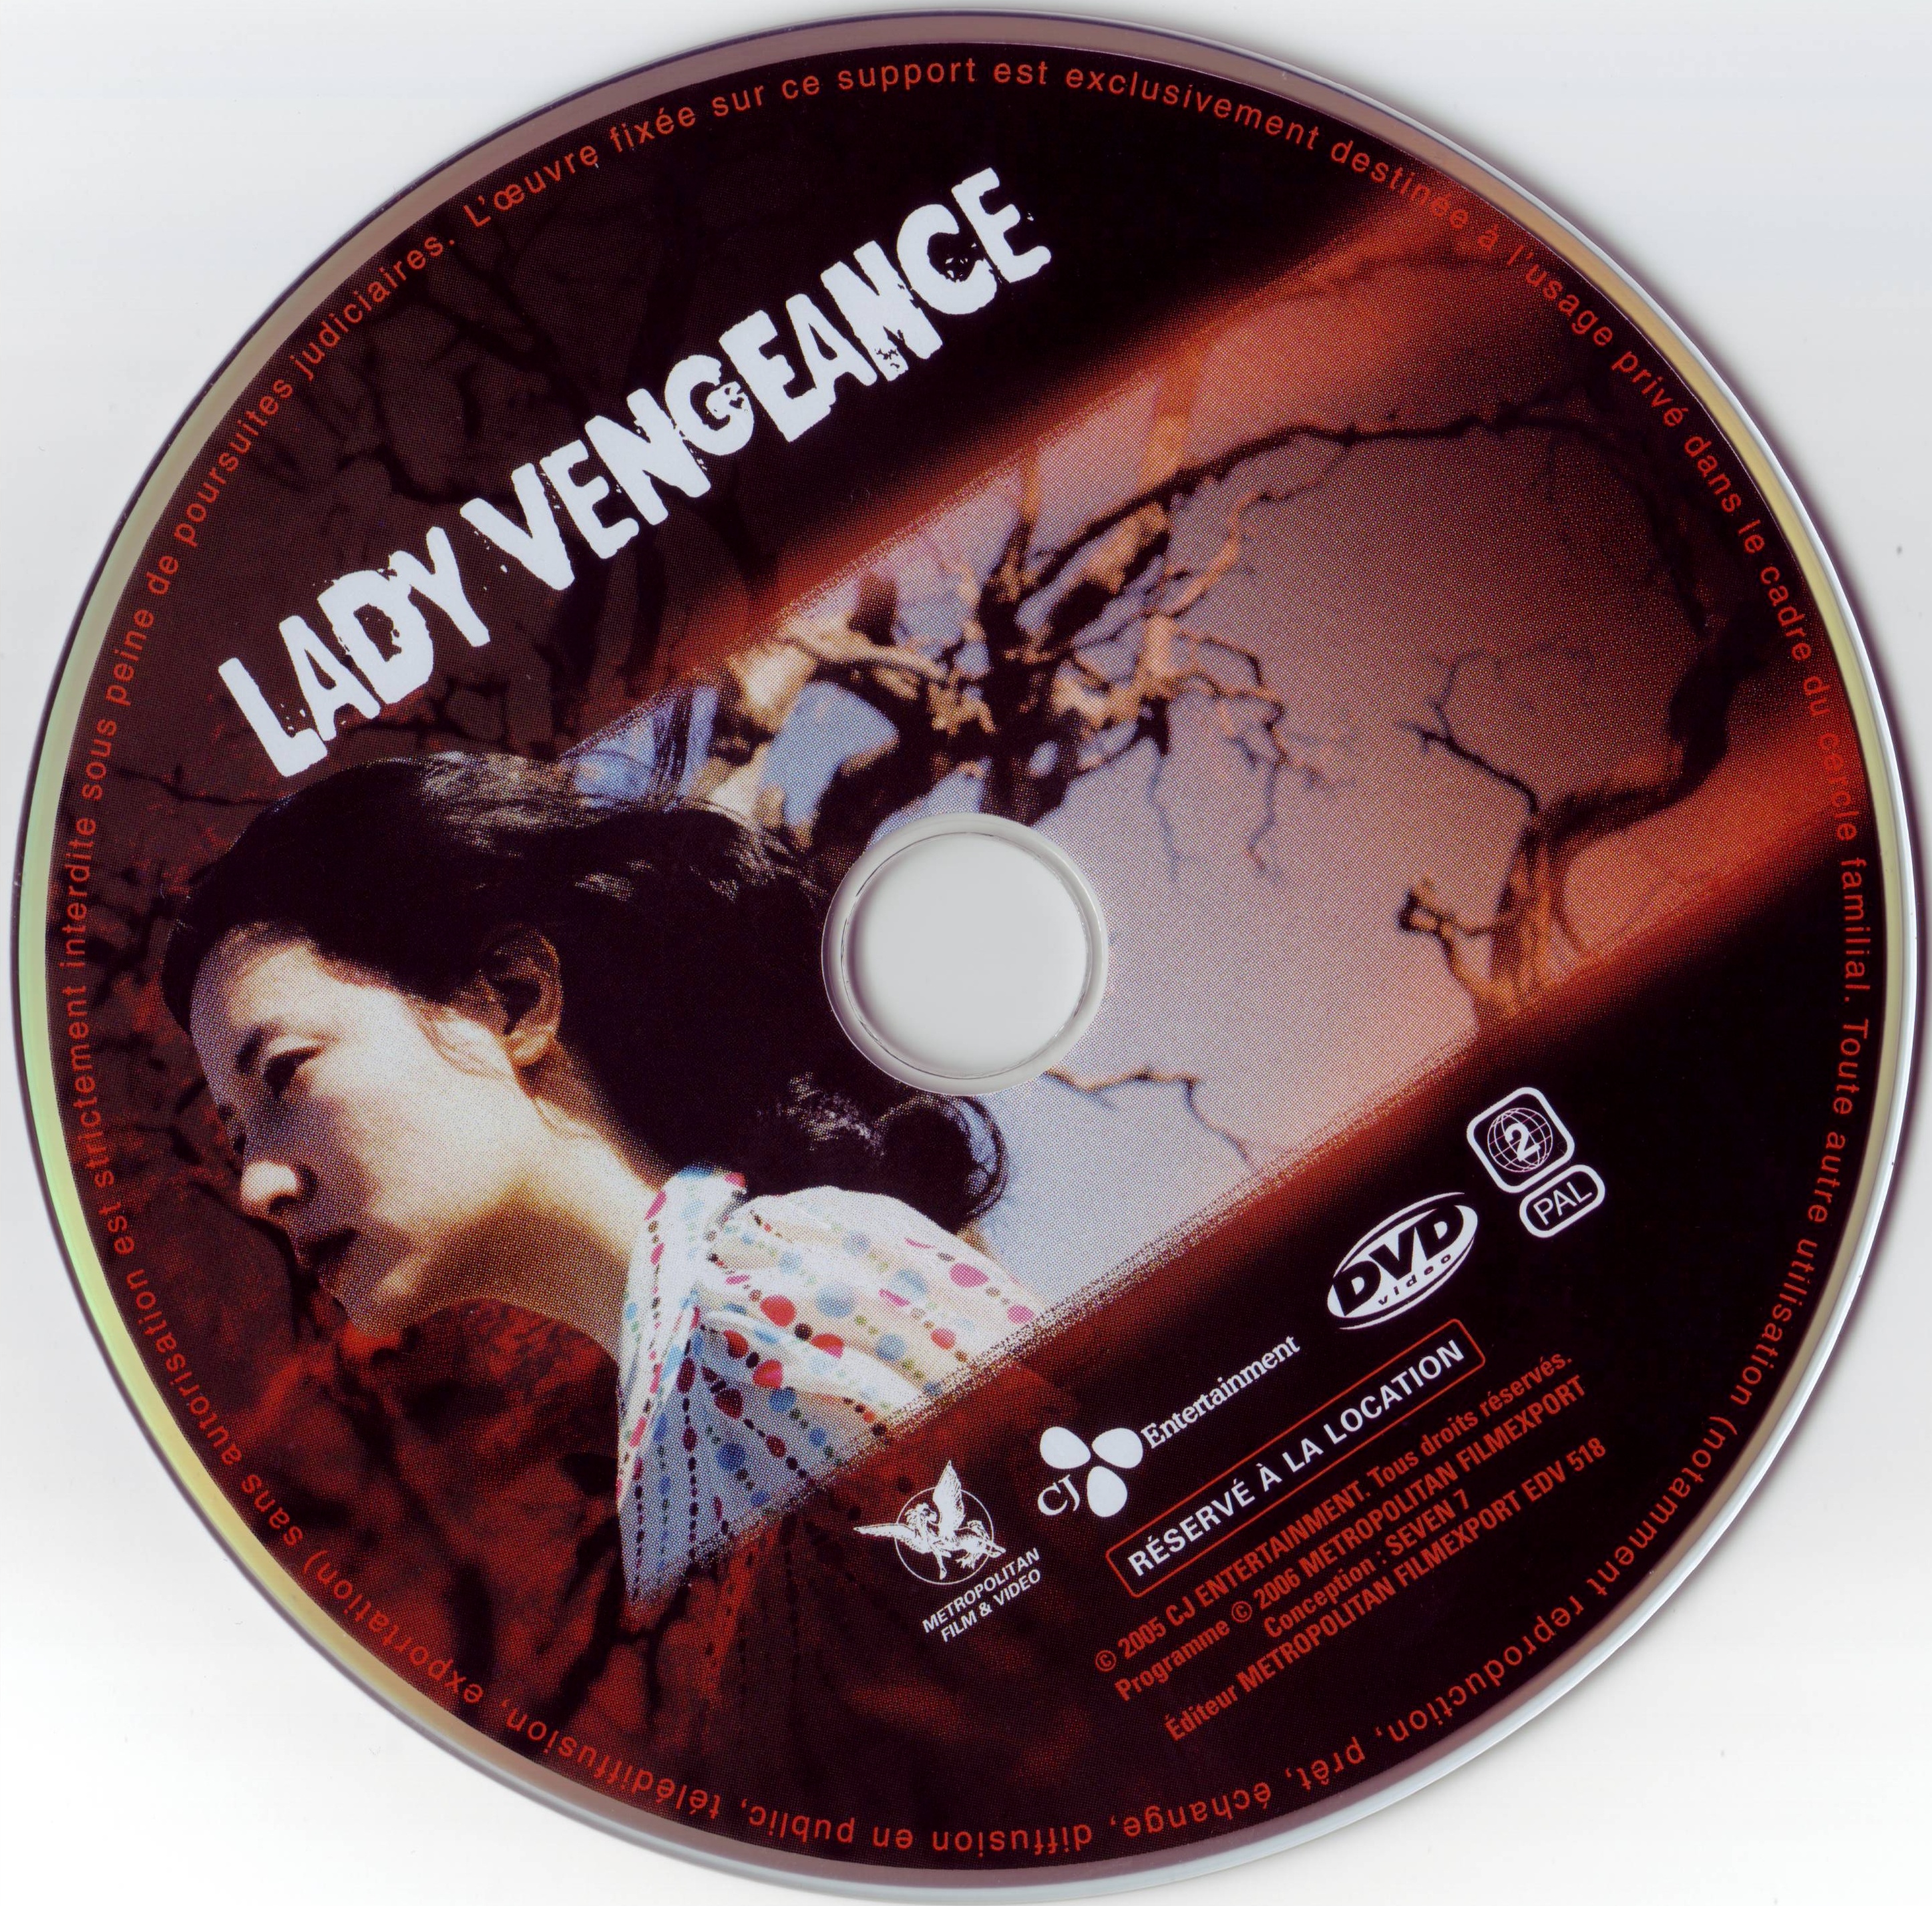 Lady vengeance v2